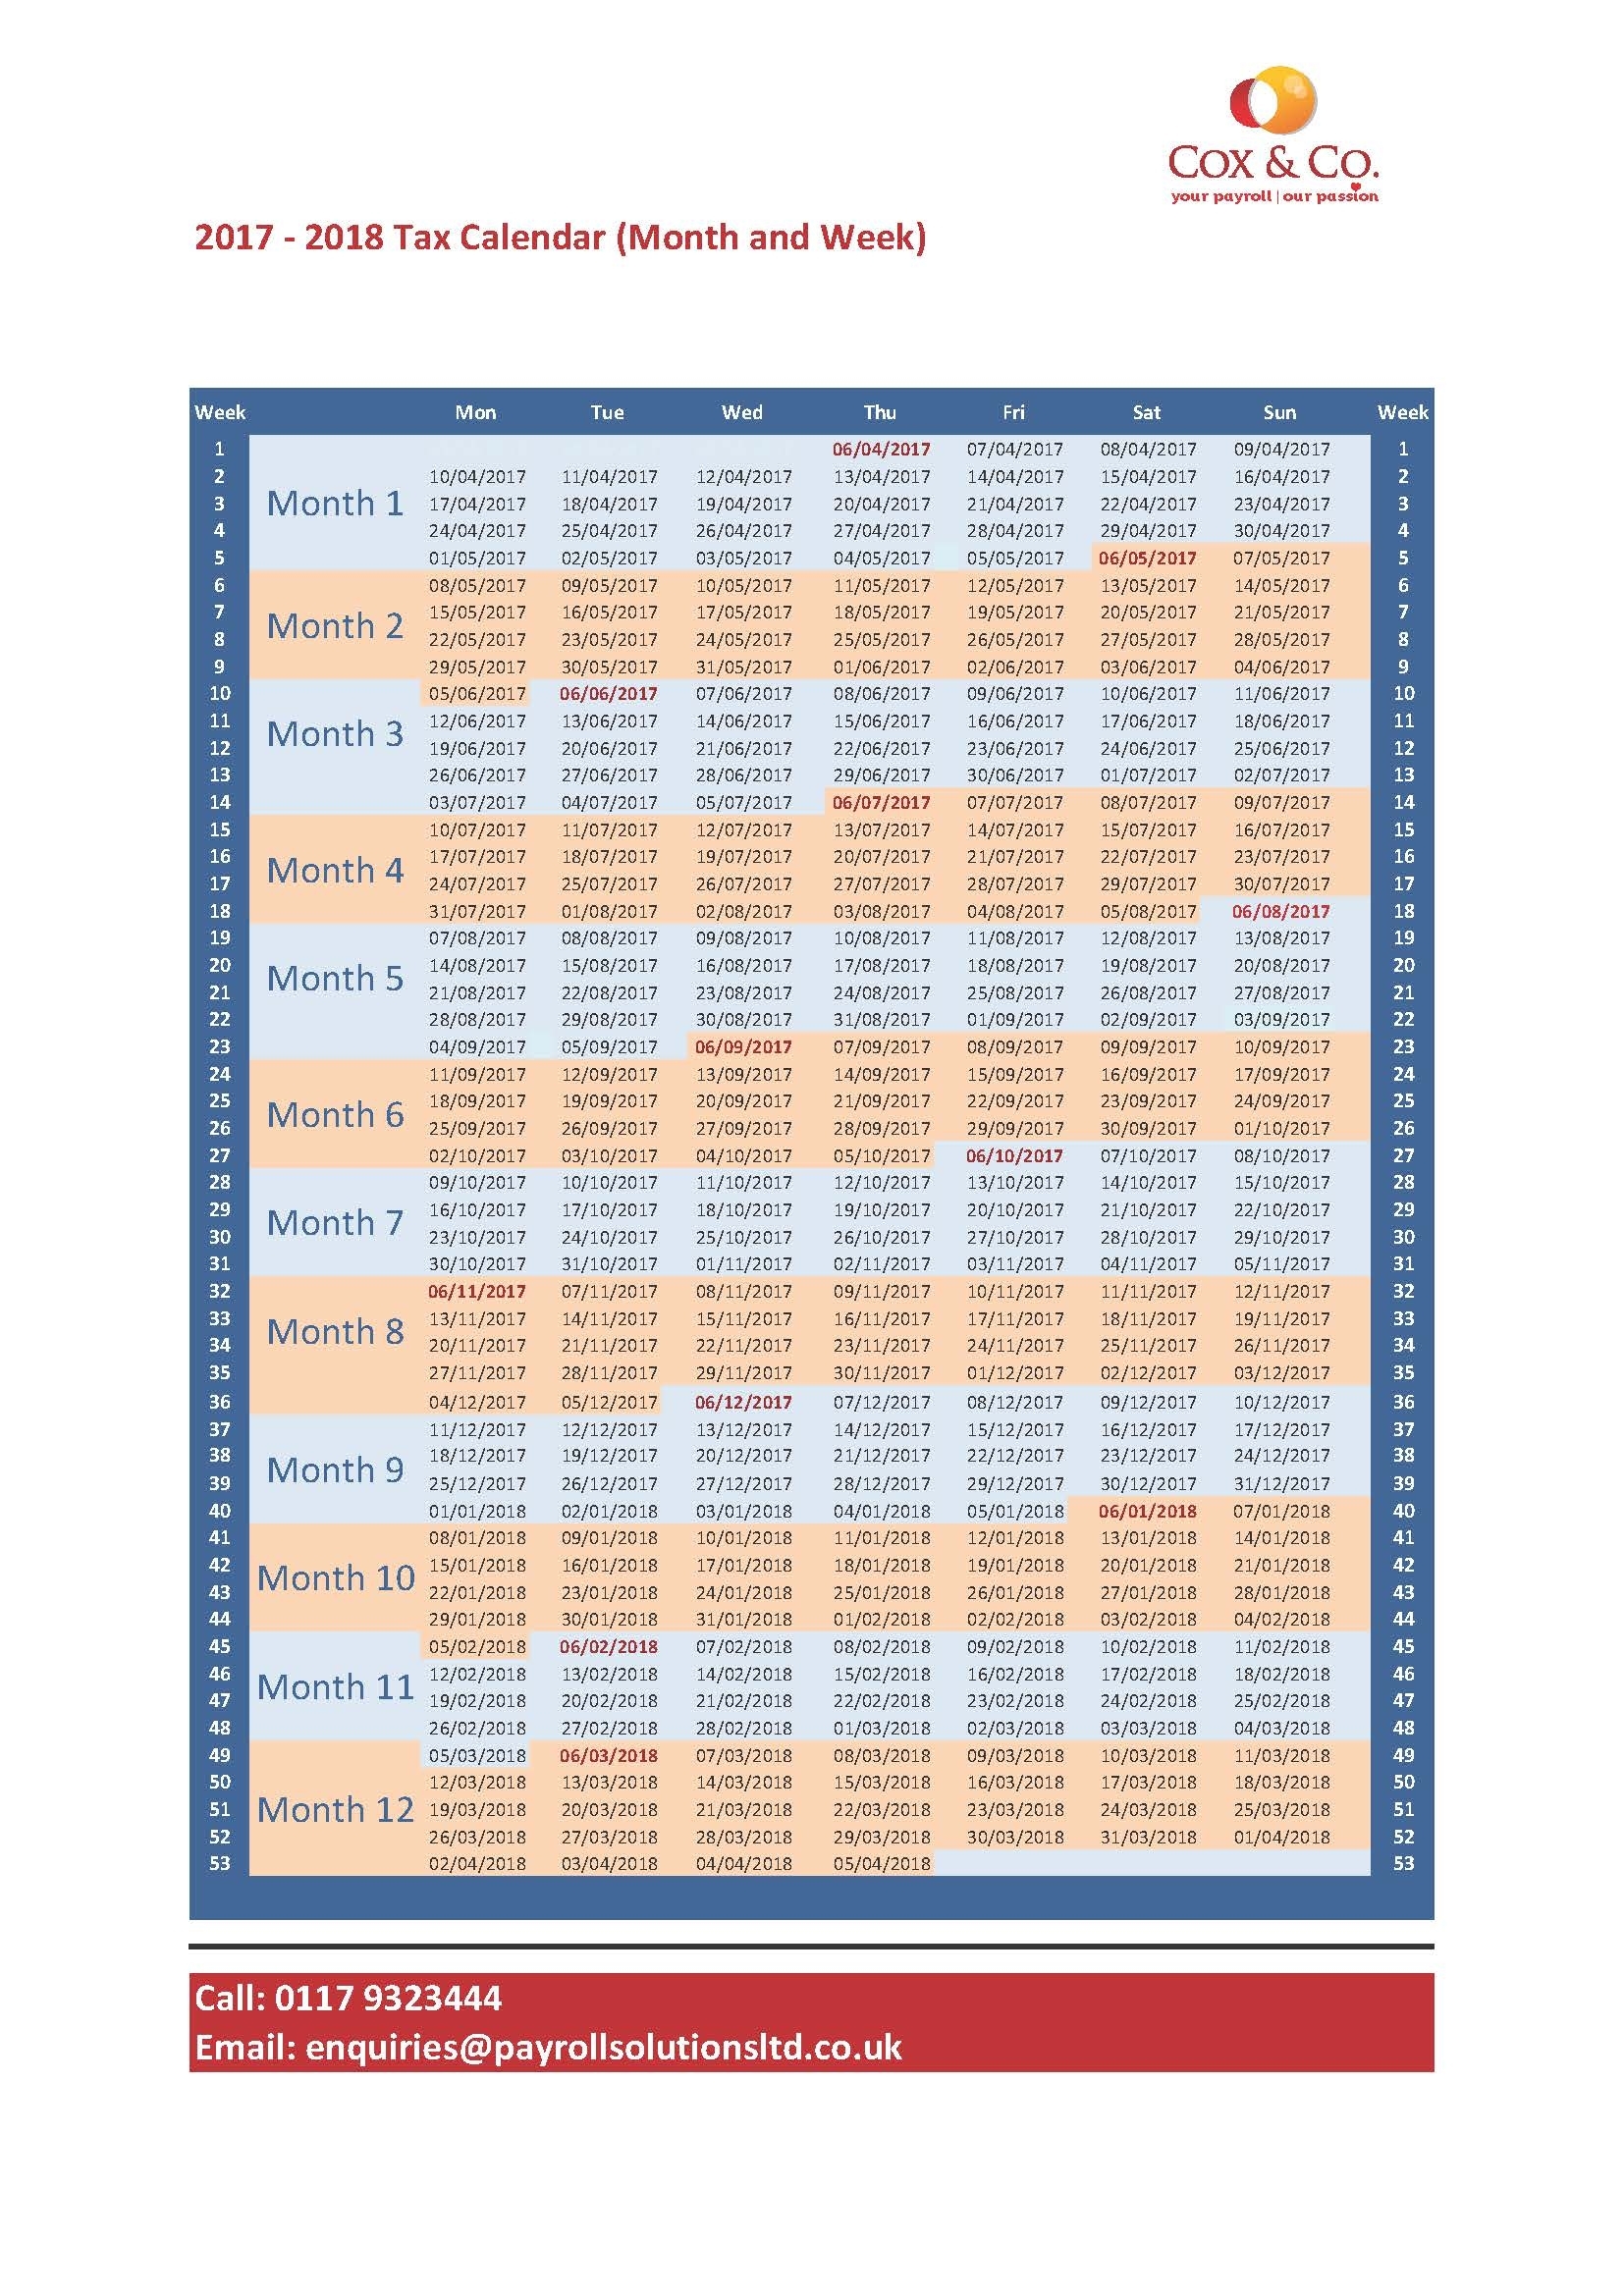 Free Tax Week &amp; Month Payroll Calendar - regarding Hmrc Tax 2019 - 2020 Calendars